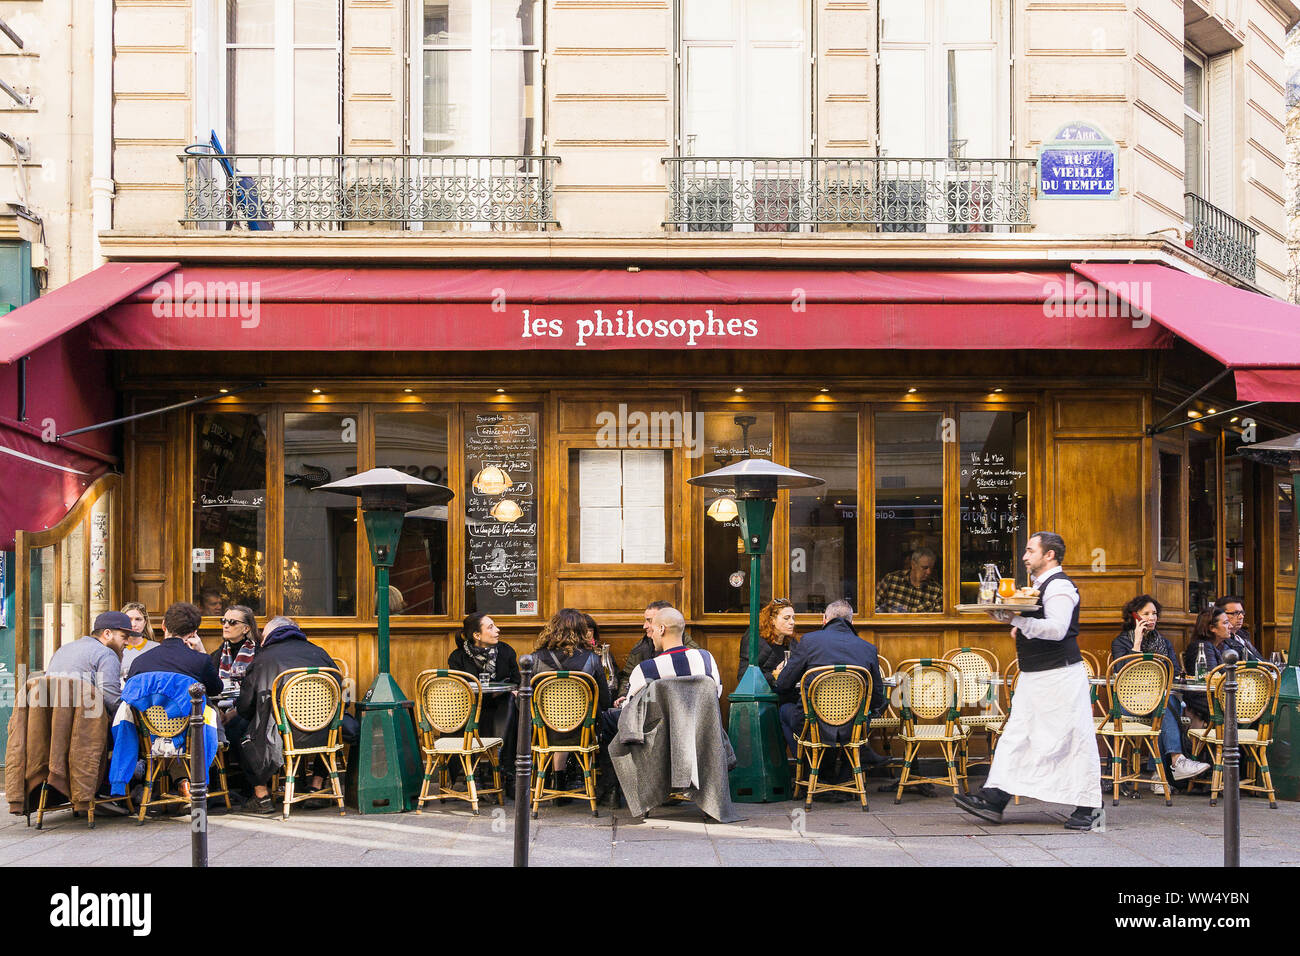 Paris cafe - Cafe Les Philosophes in the Marais district of Paris, France. Stock Photo